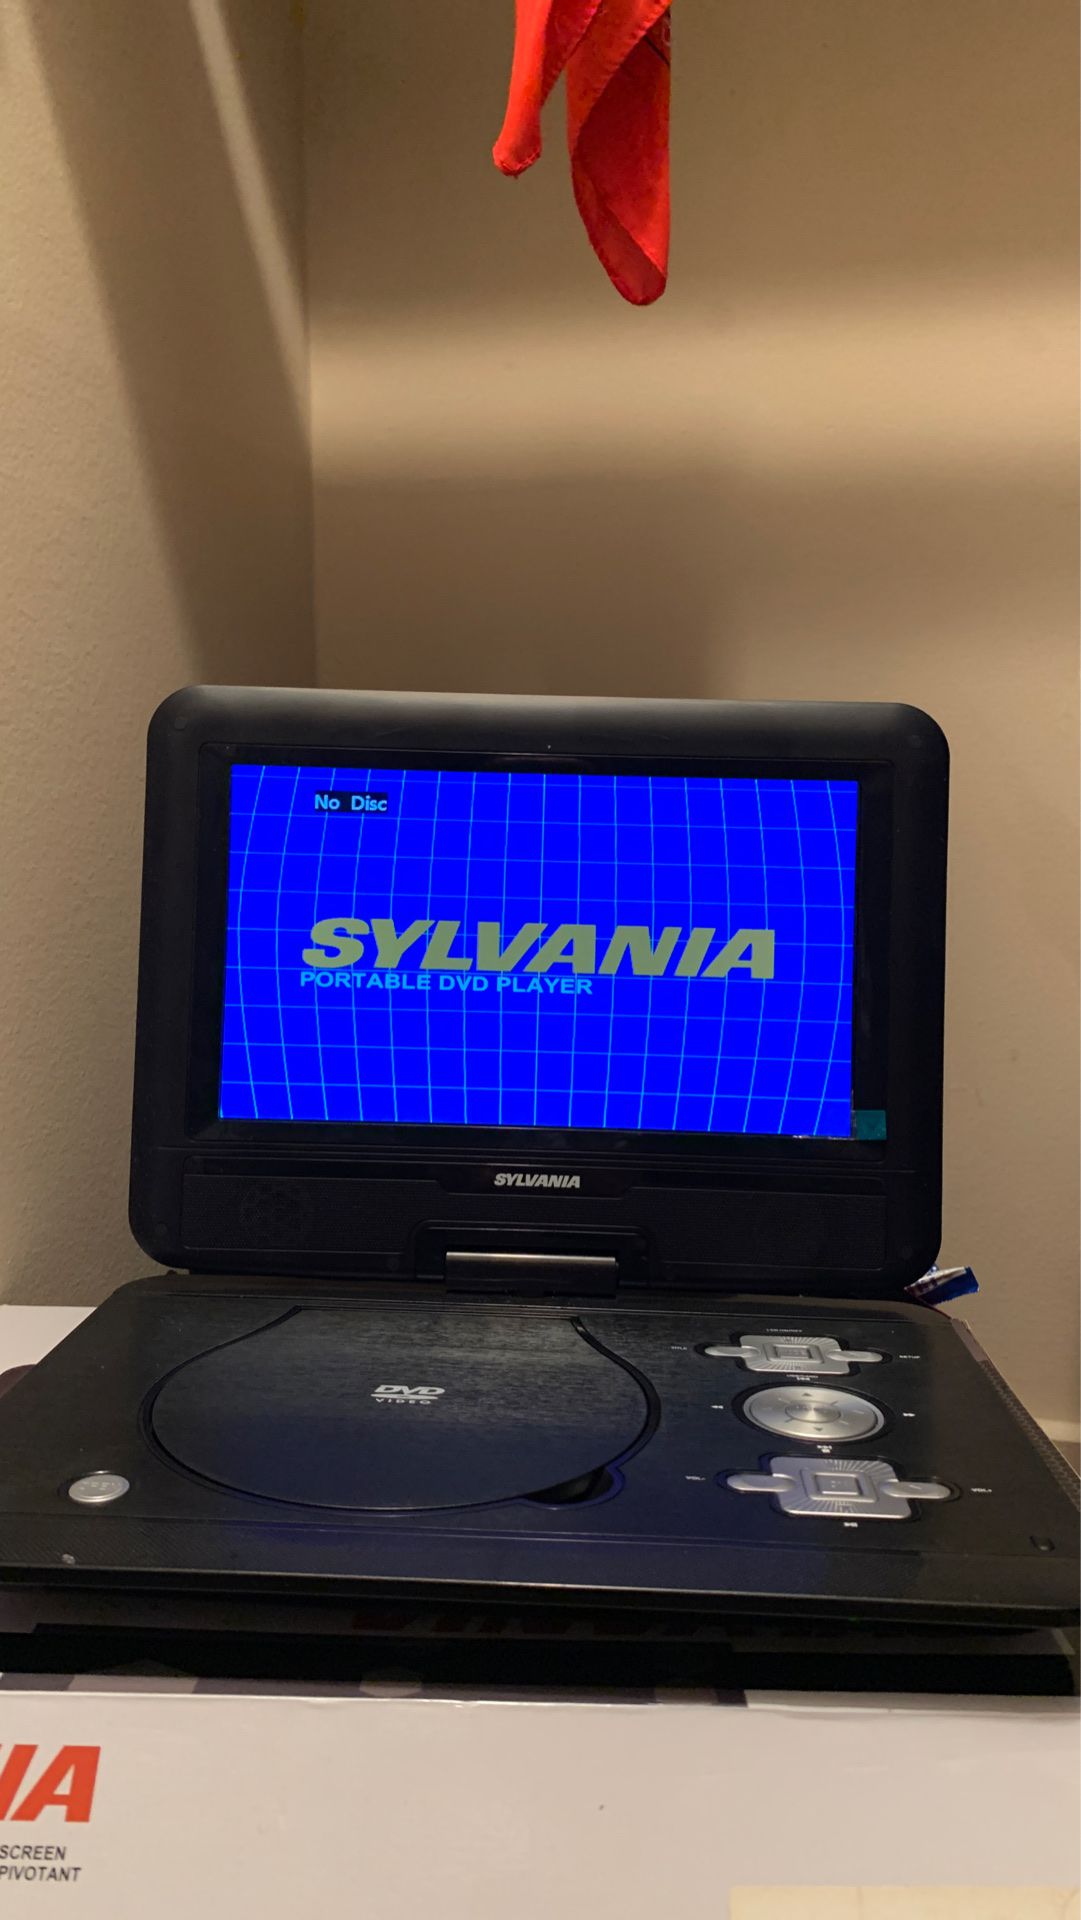 Sylvania DVD portable player